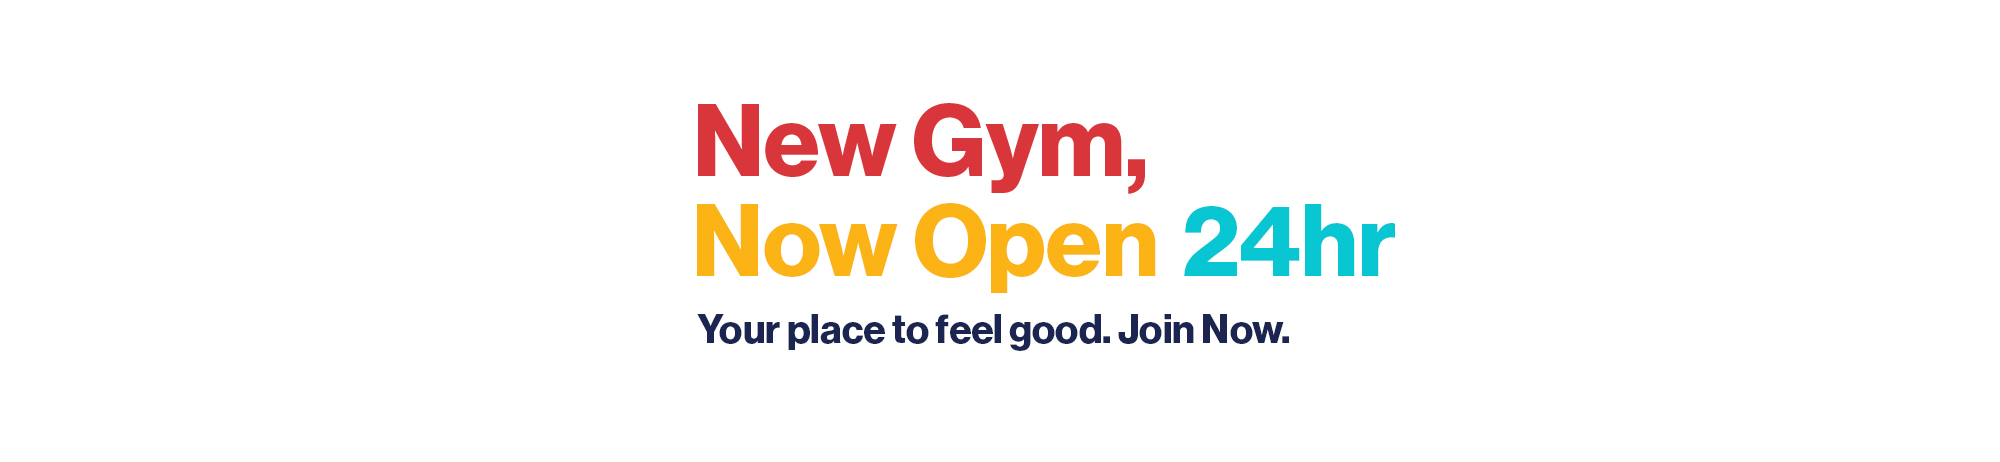 new-gym-openign-24hr-web-banner.jpg